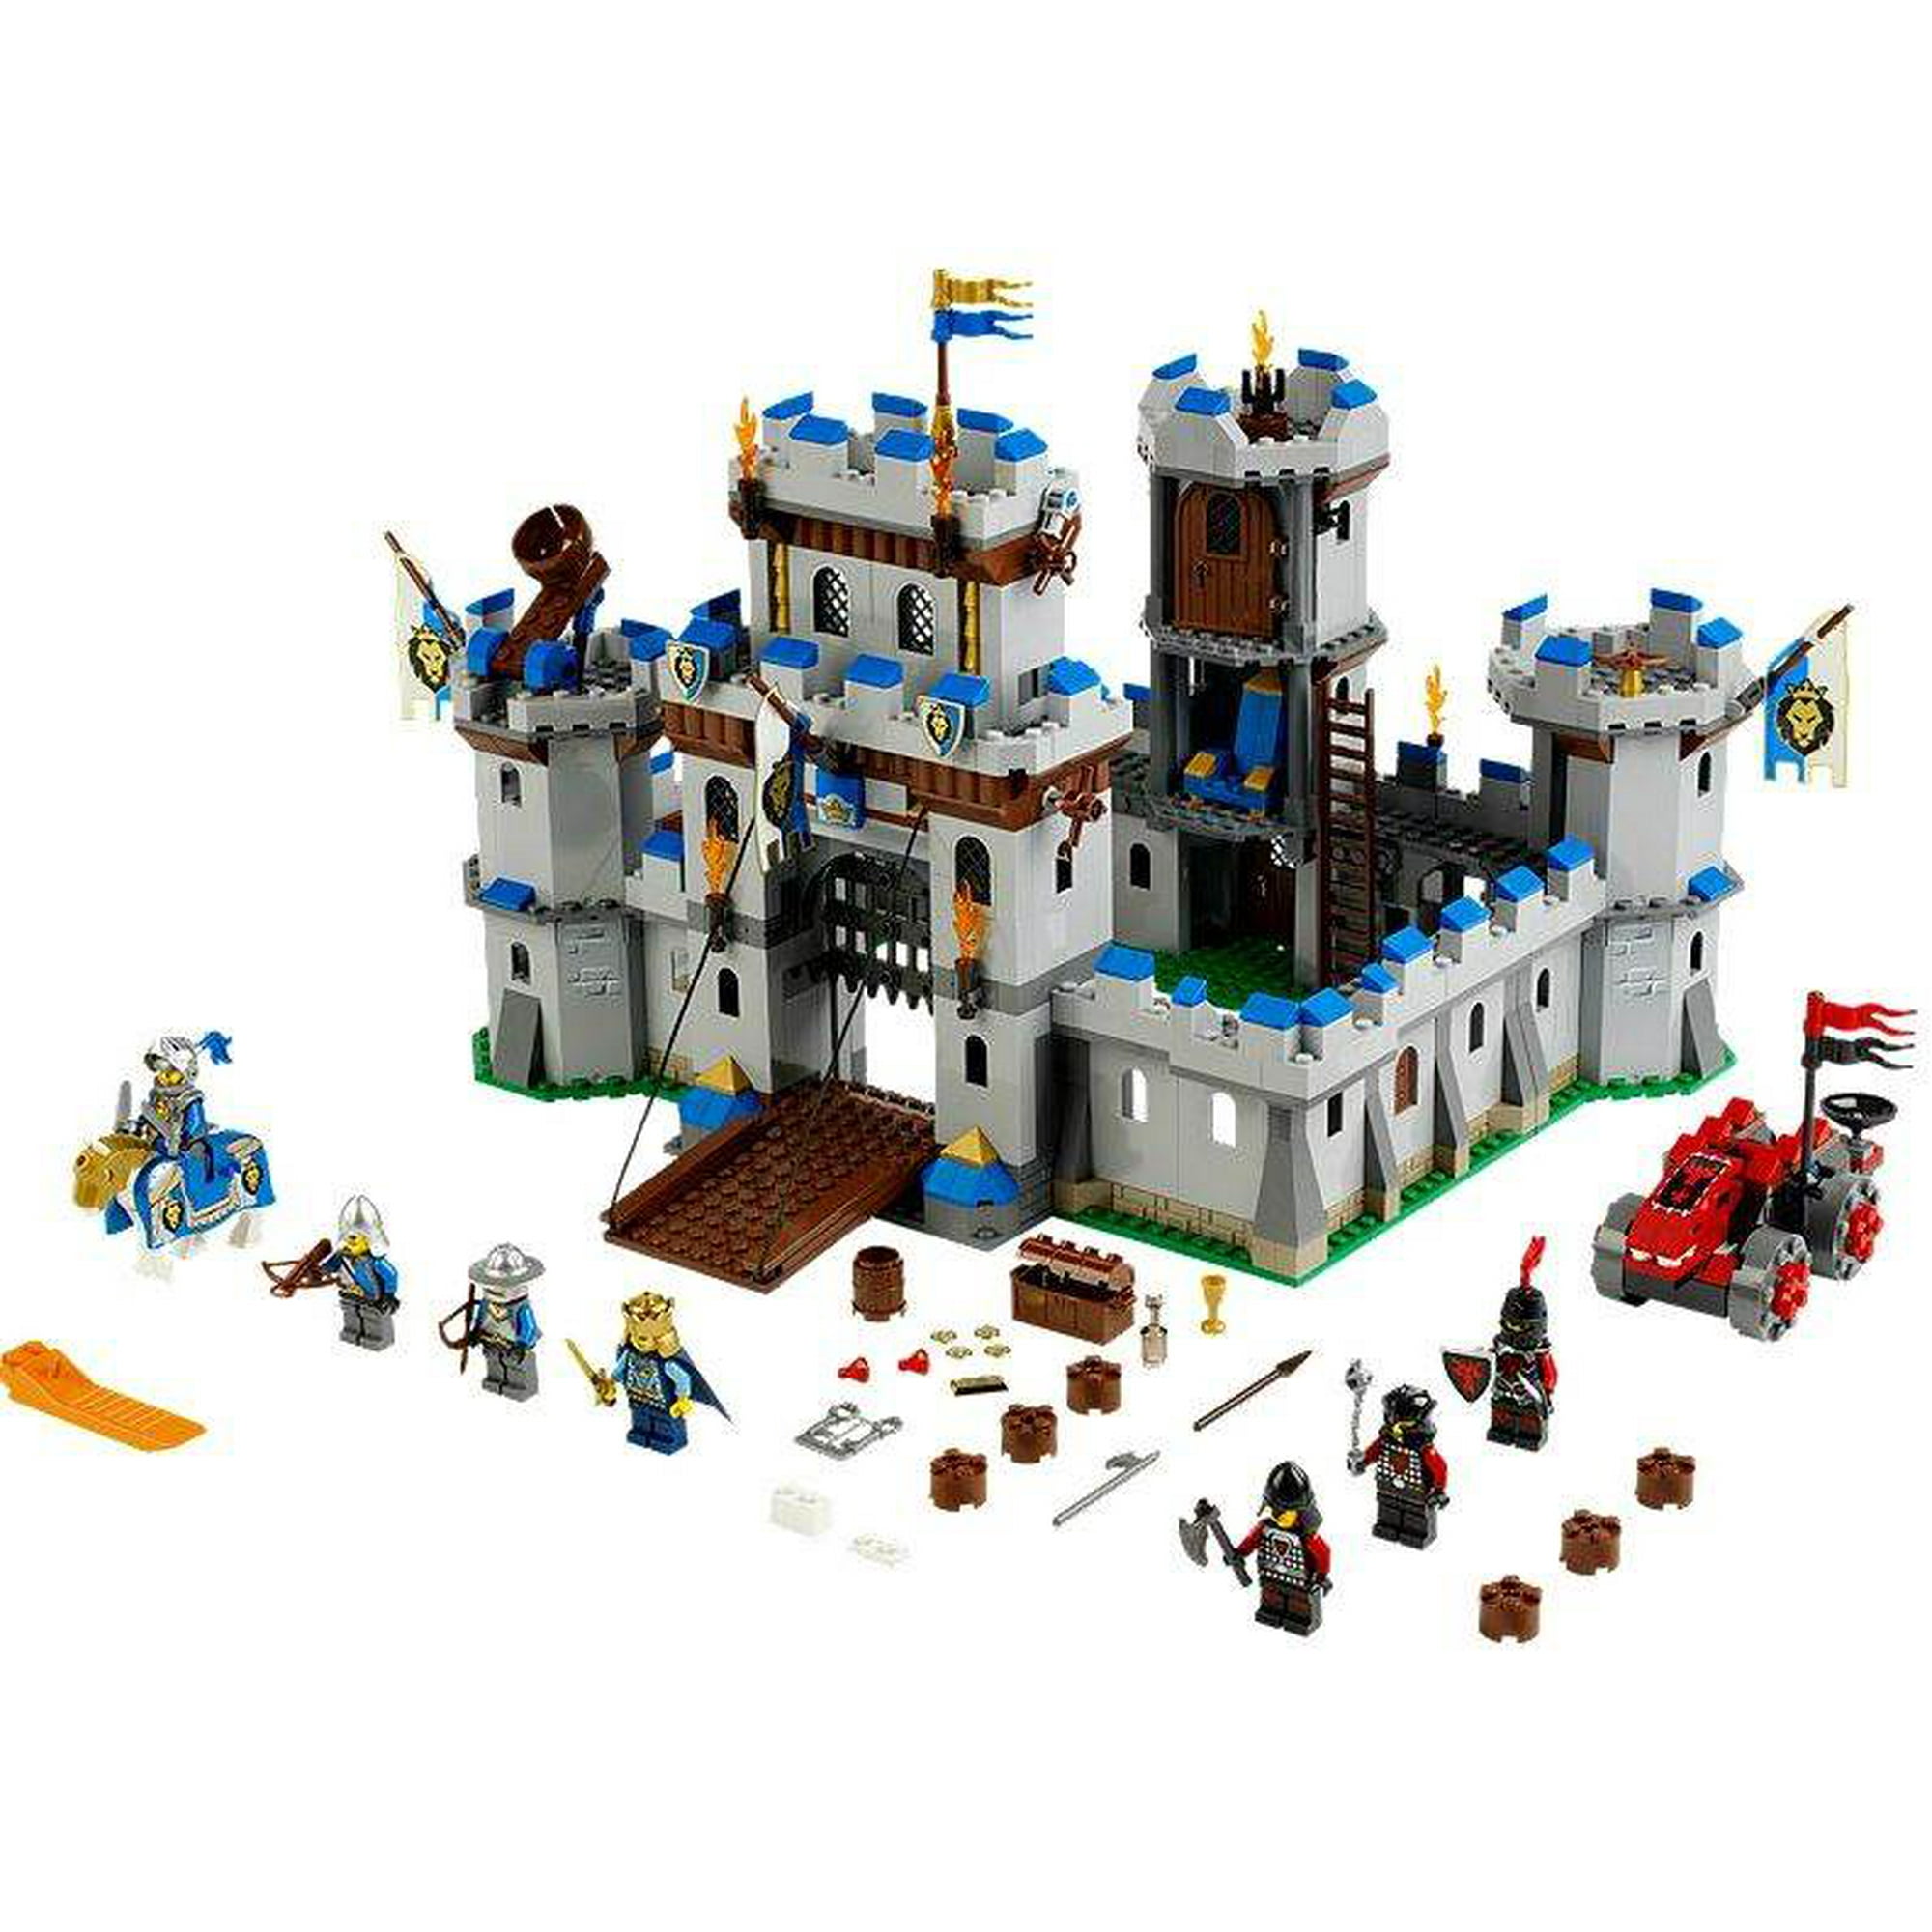 1x Horse choose Your Color/Quantity Details about   Lego Castle Medieval